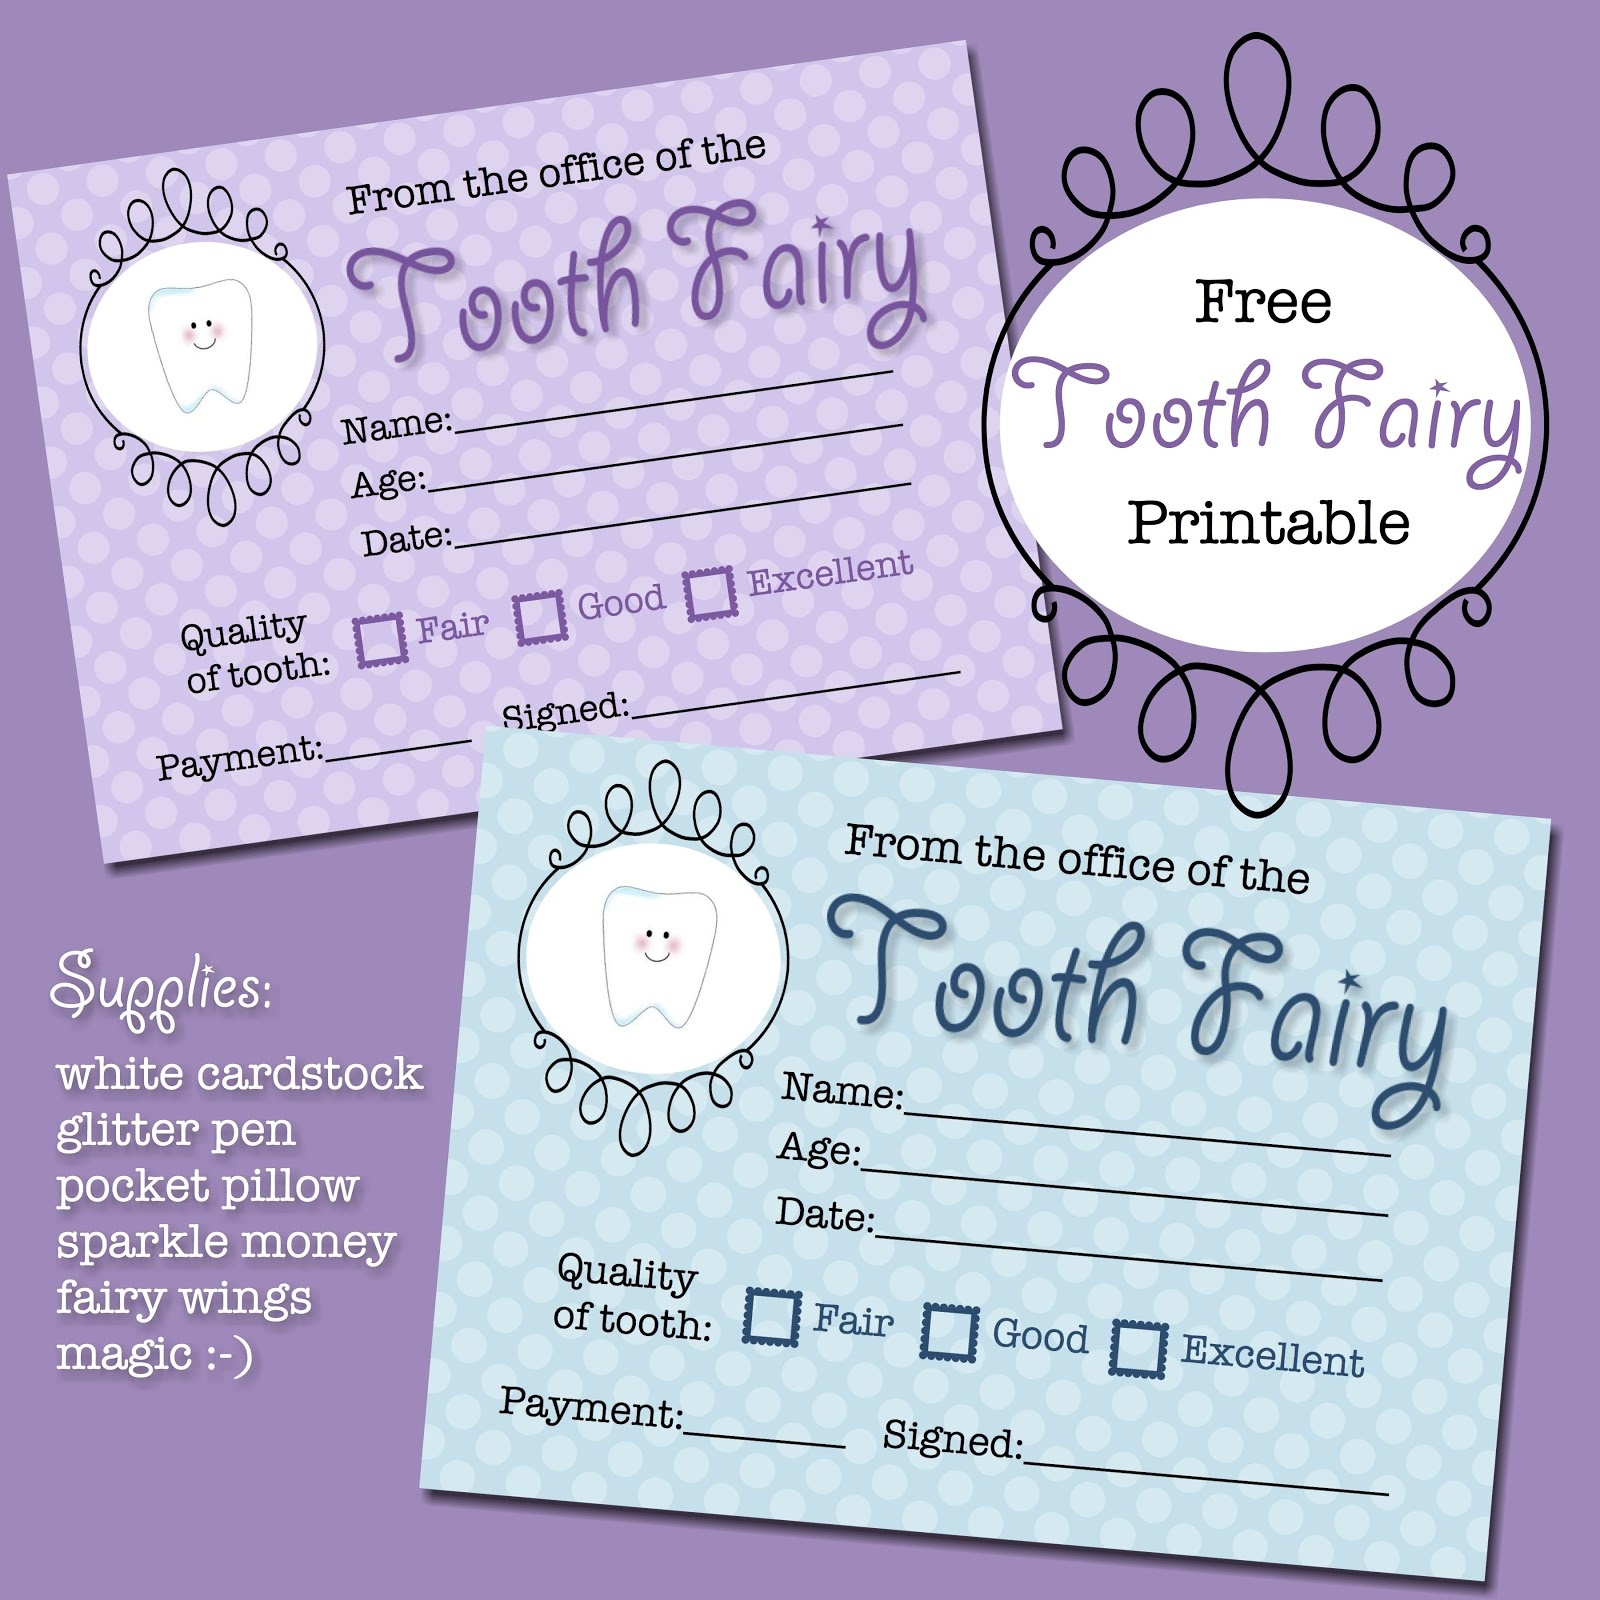 The Polka Dot Posie: Free Tooth Fairy Receipt Printable - Free Tooth Fairy Printables